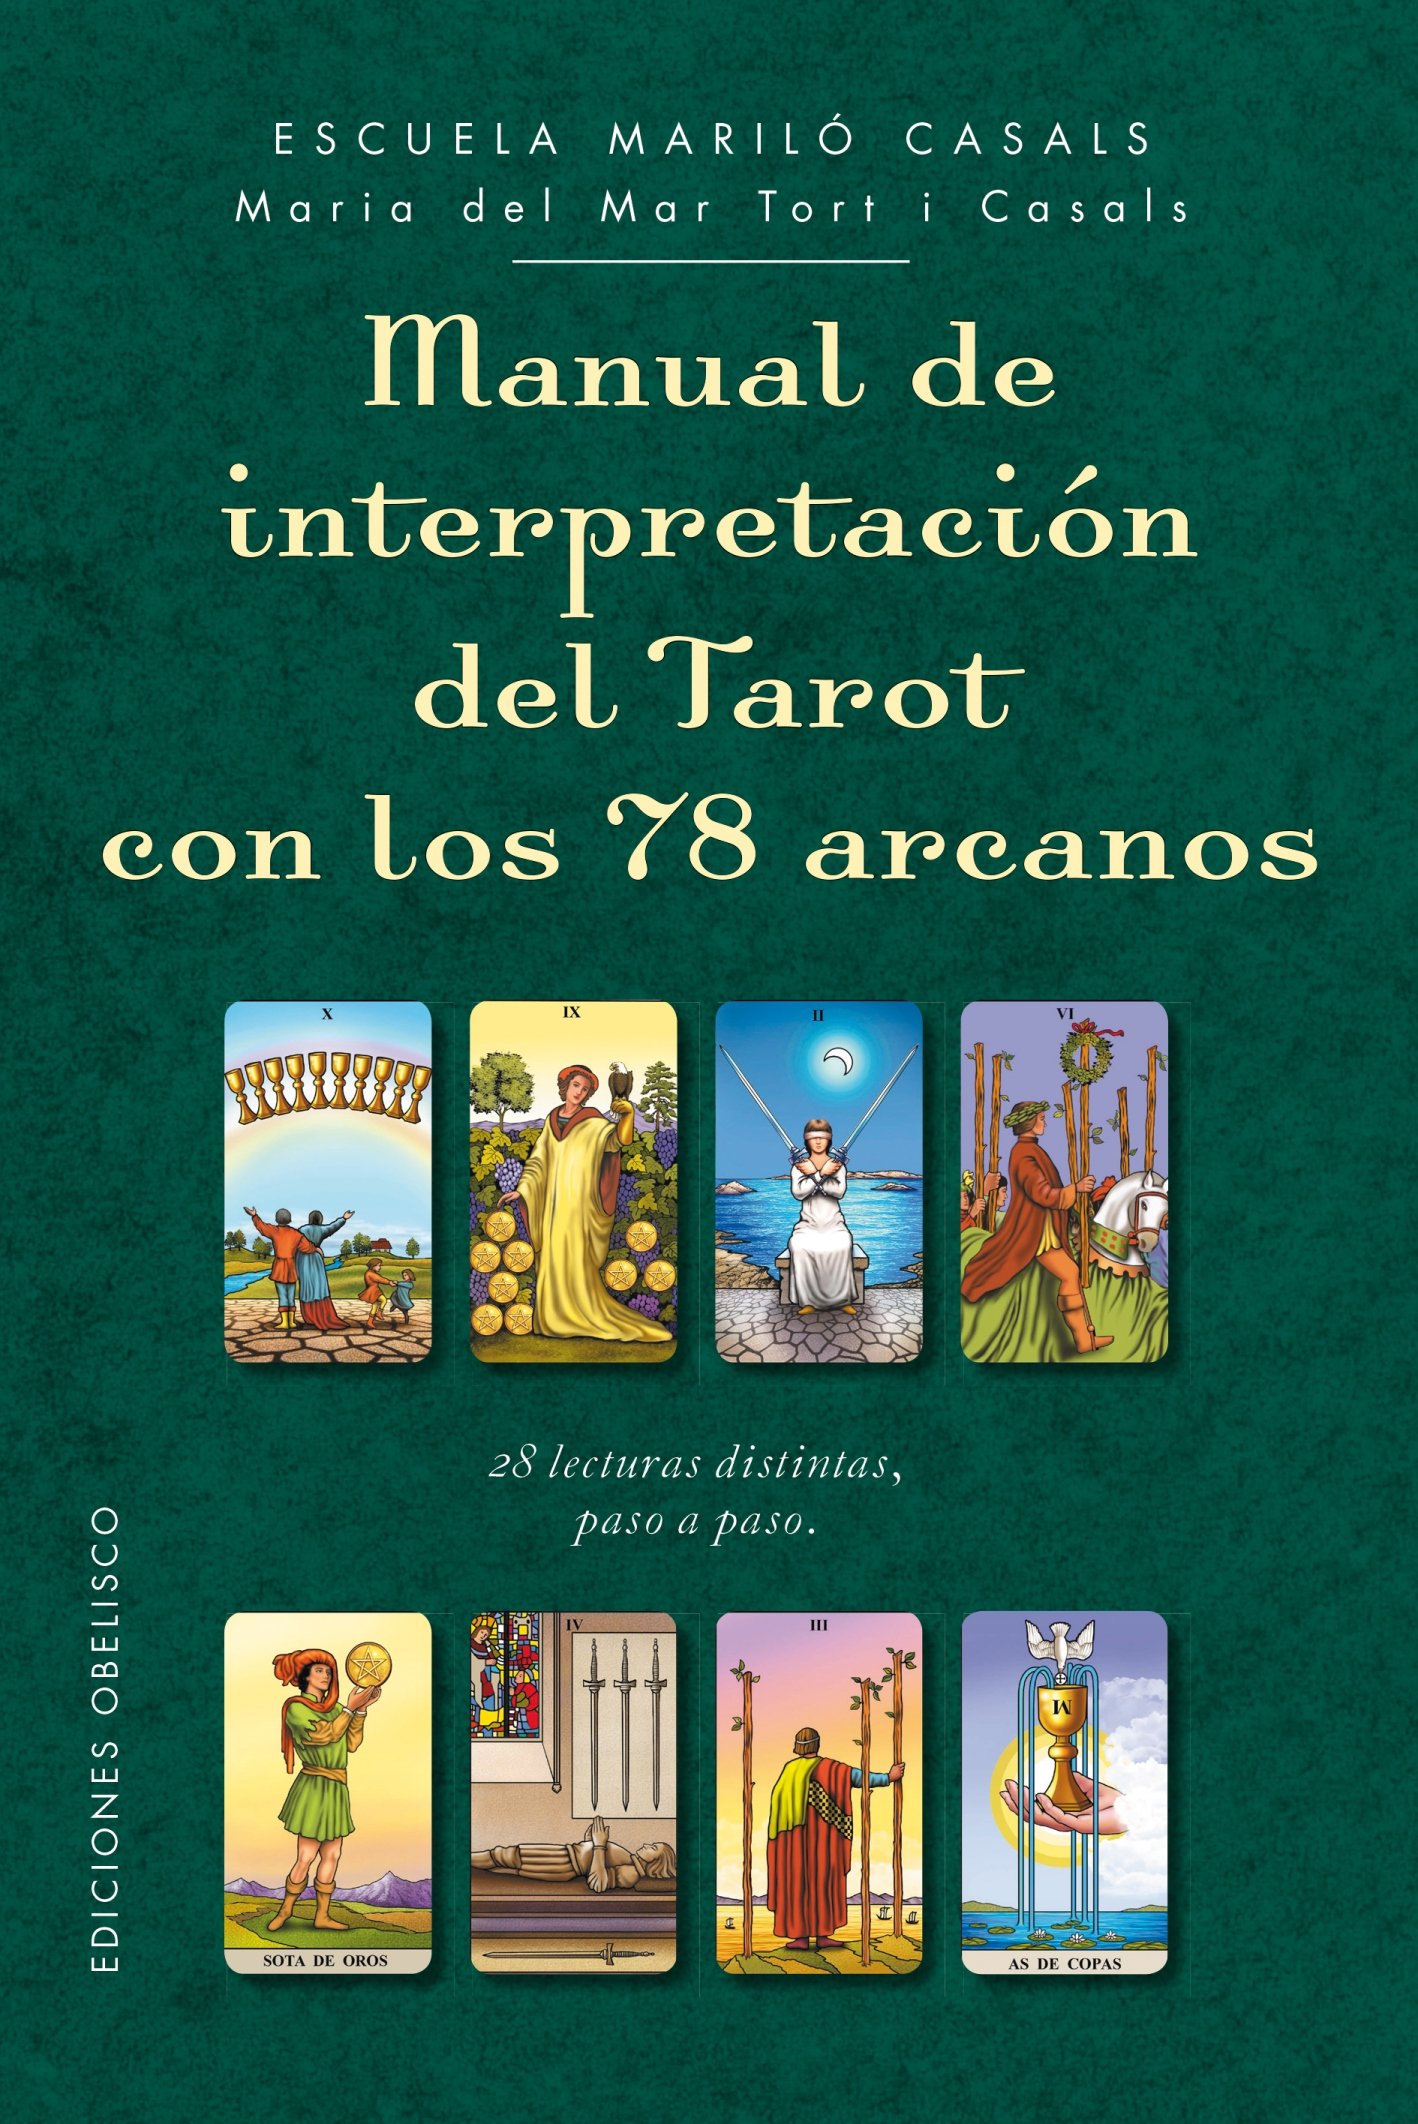 Reseña de los Manuales de interpretación del Tarot de María del Mar Tort